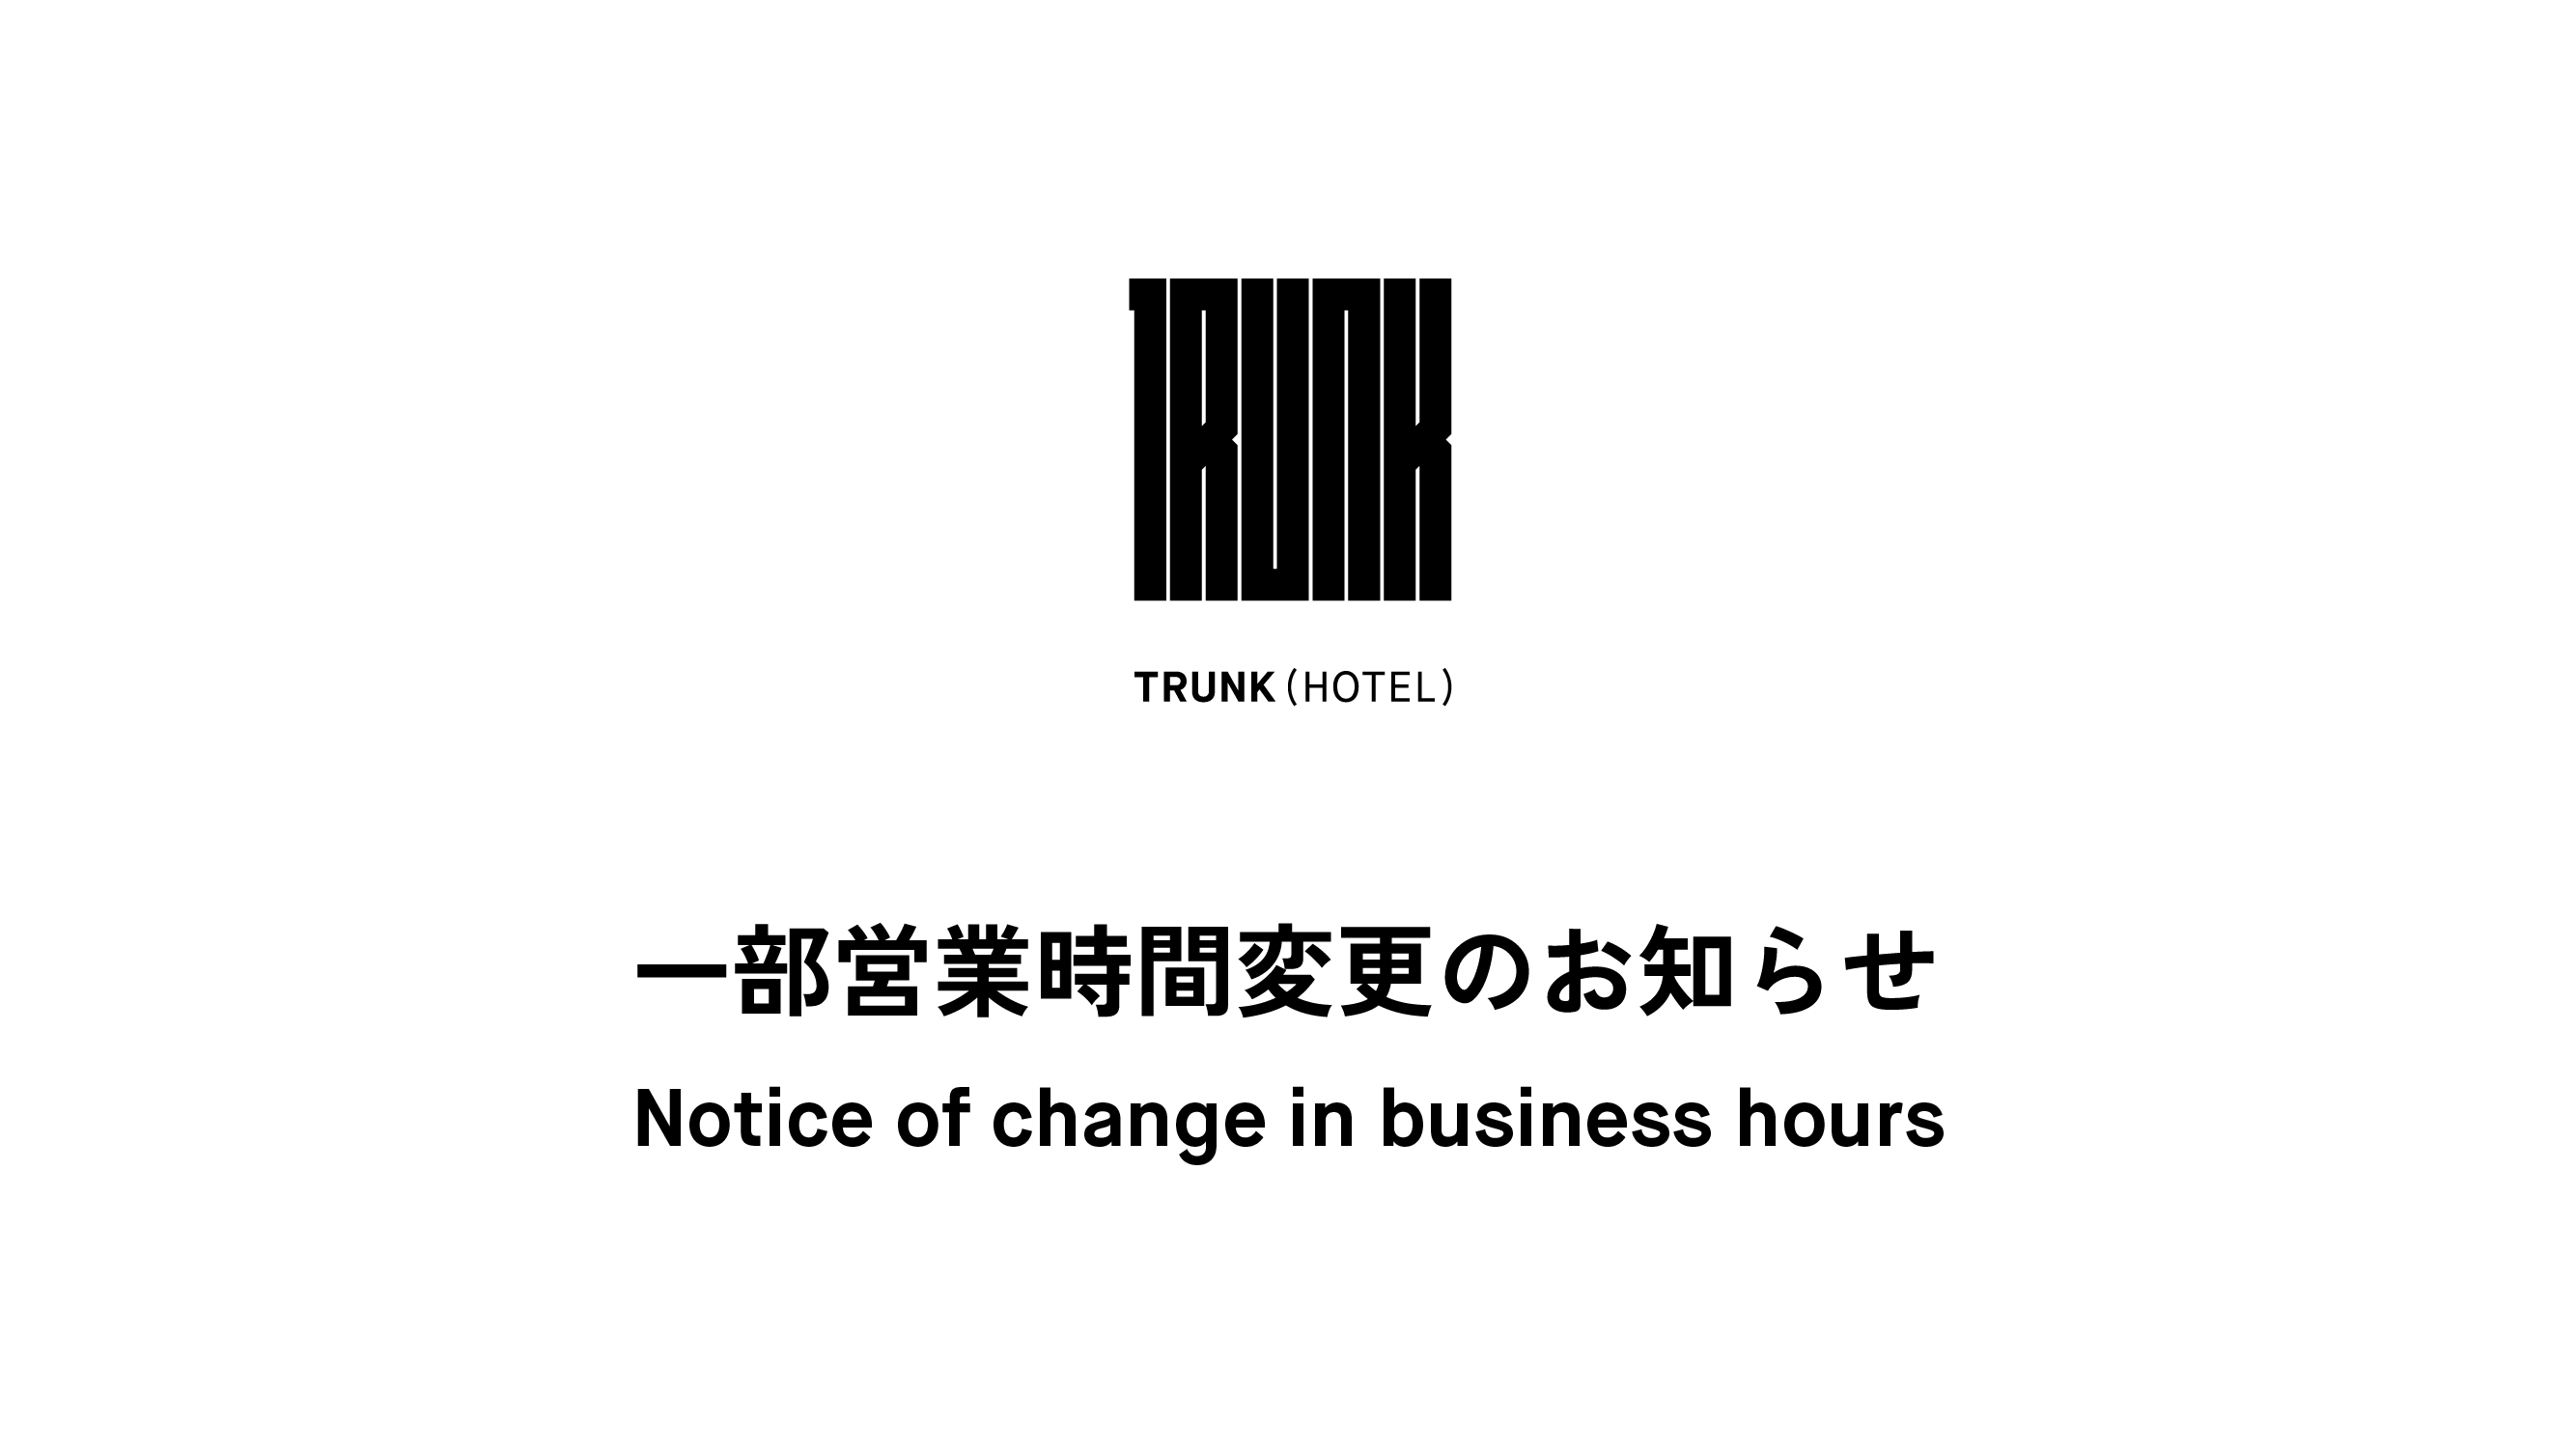 TRUNK(HOTEL)  一部営業時間変更のお知らせ [2019.5.17]